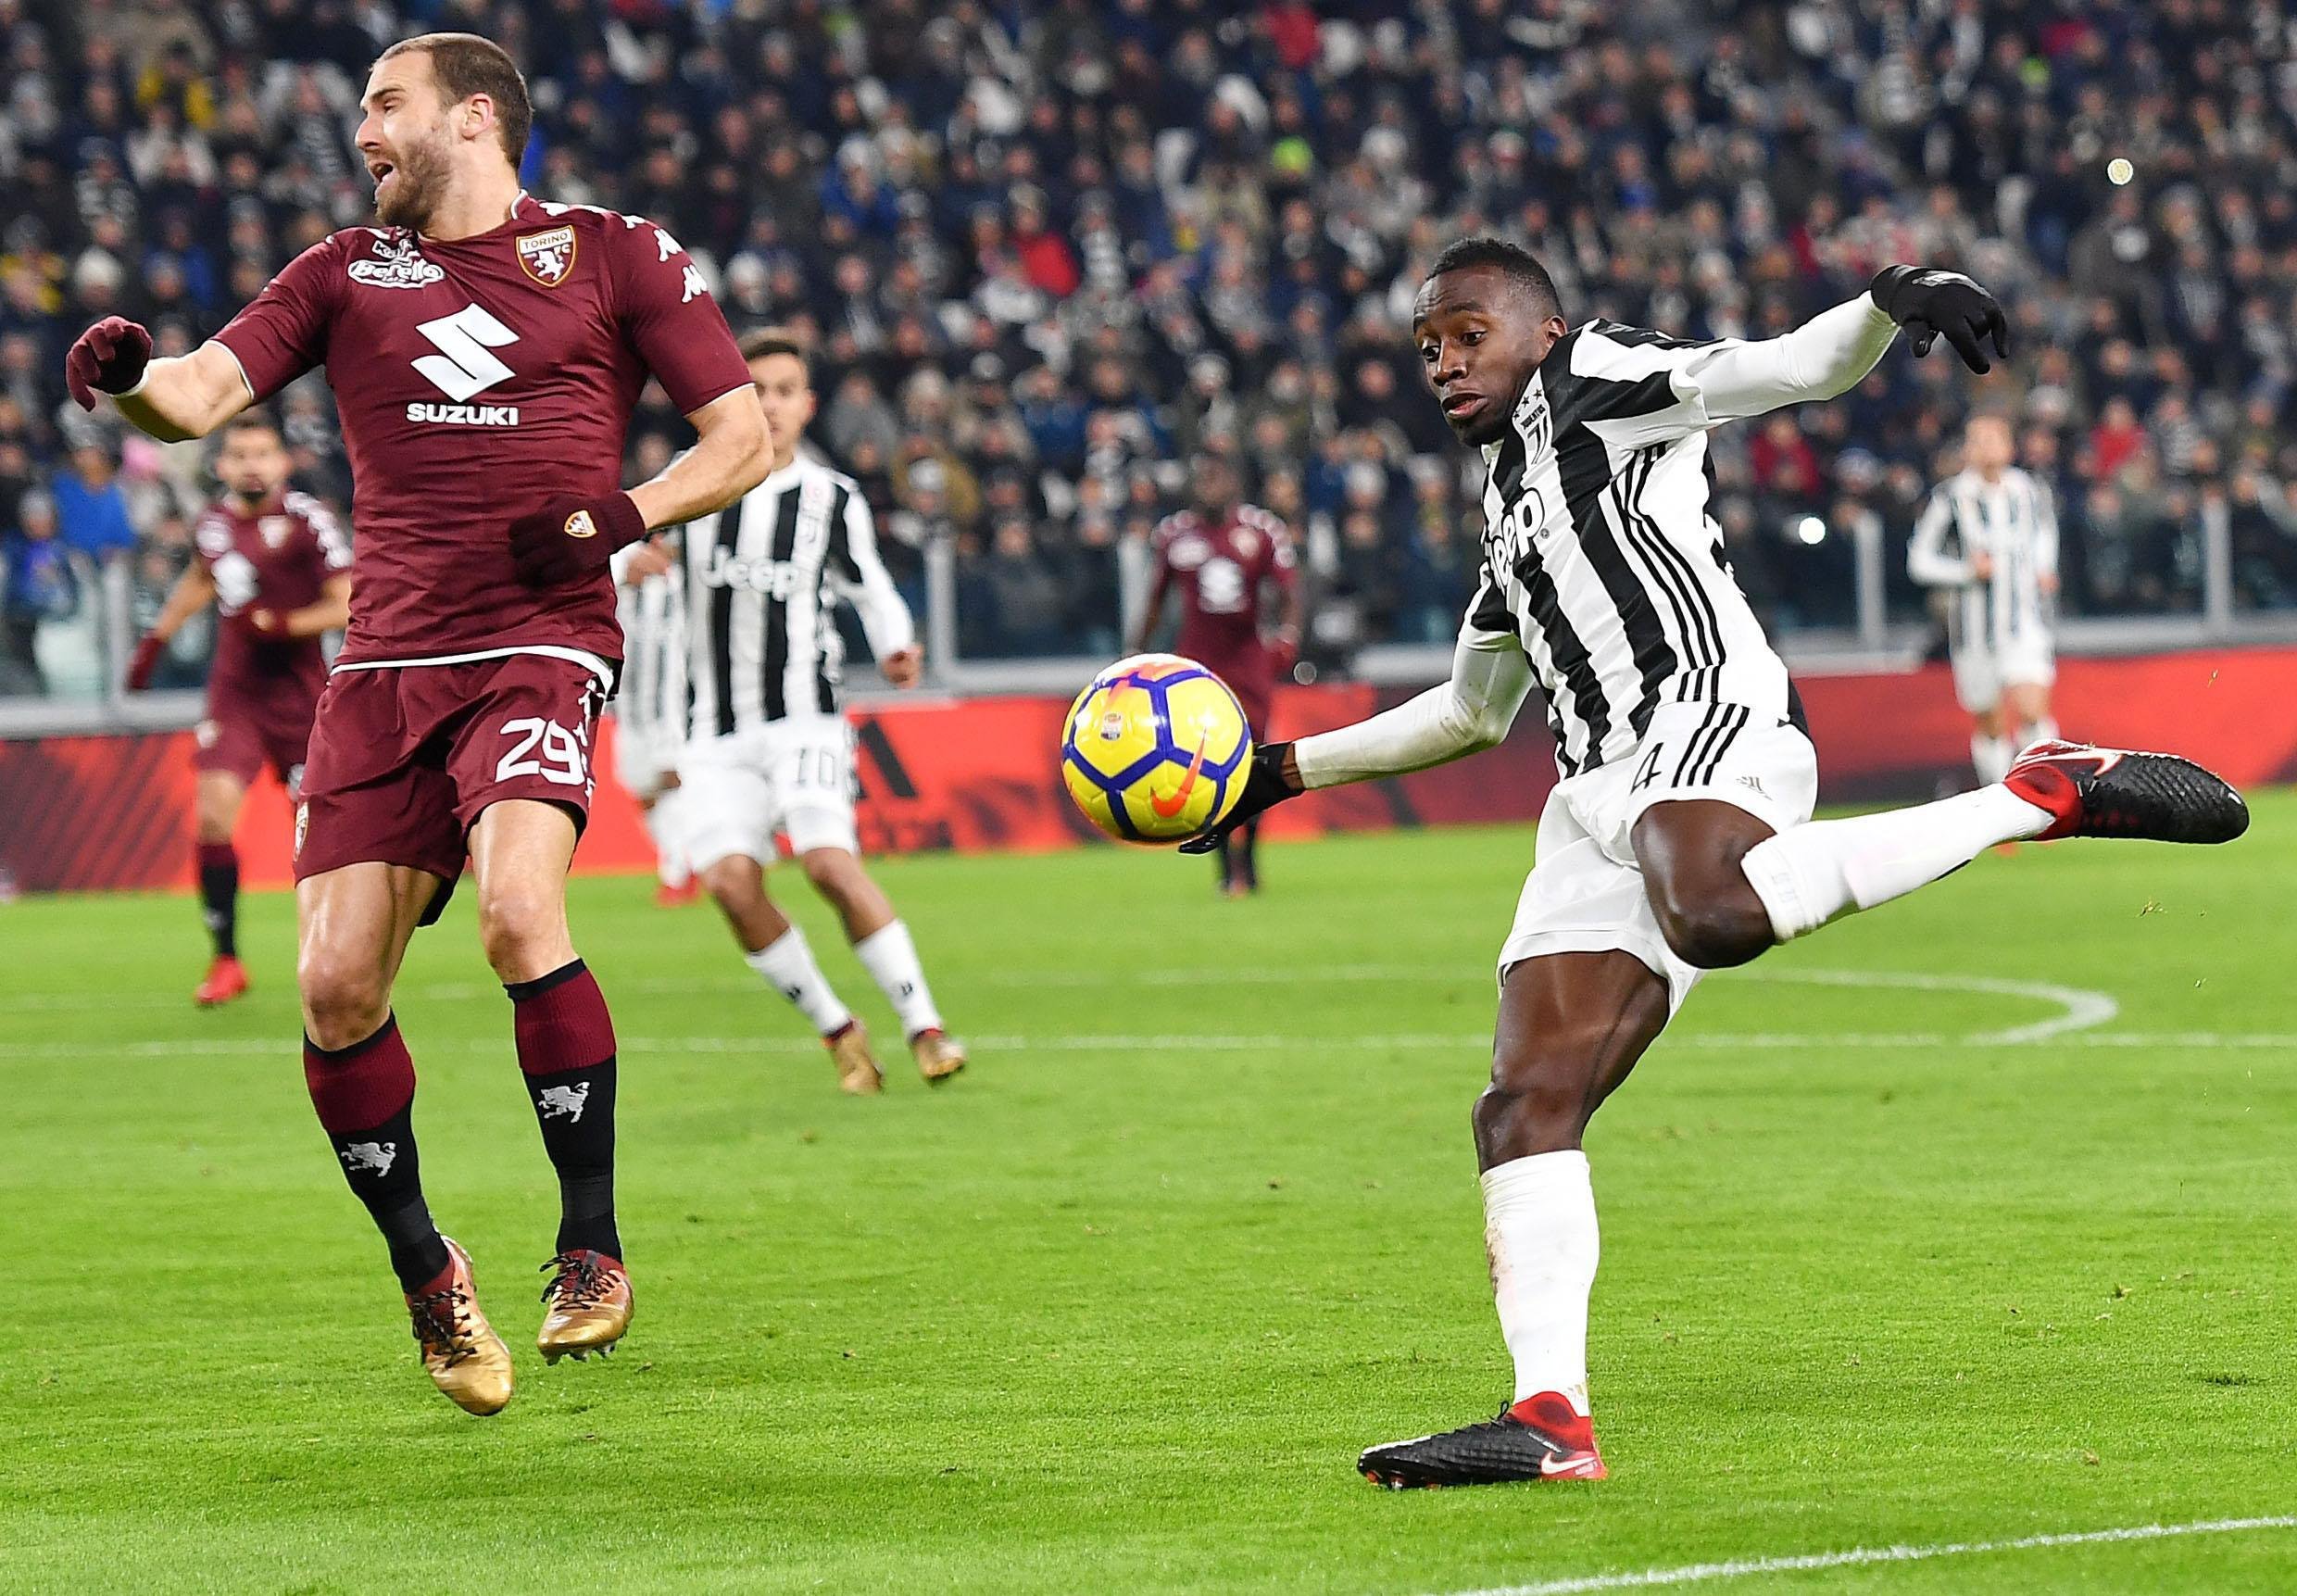 Sanció exemplar de la Lliga italiana per càntics racistes contra un futbolista de la Juventus